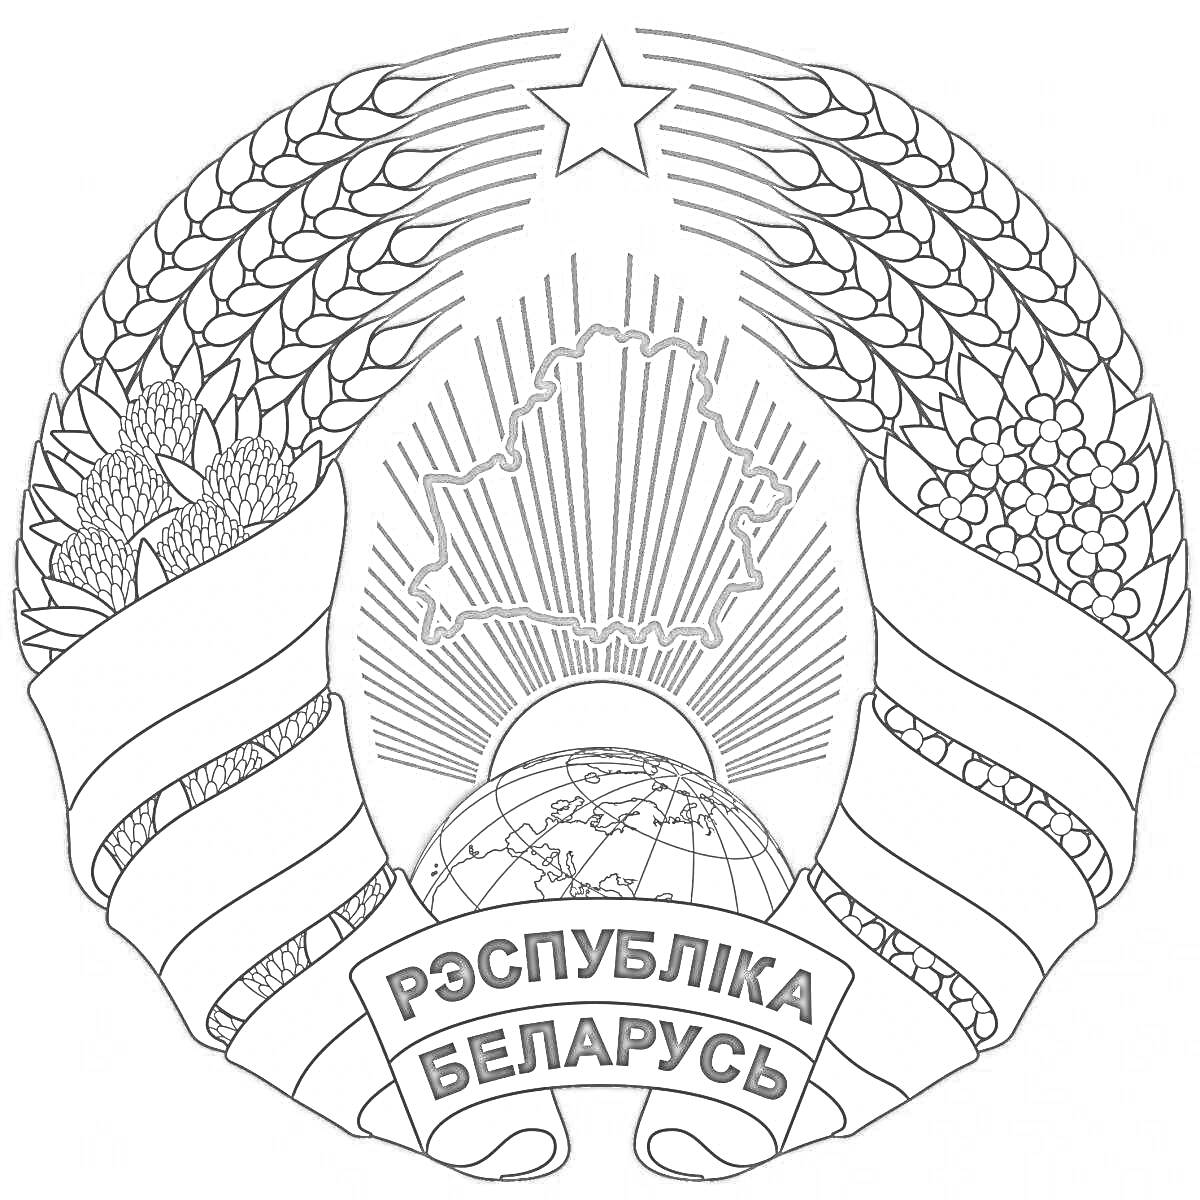 Герб Республики Беларусь с изображением республики, земного шара, лент и пятиконечной звезды